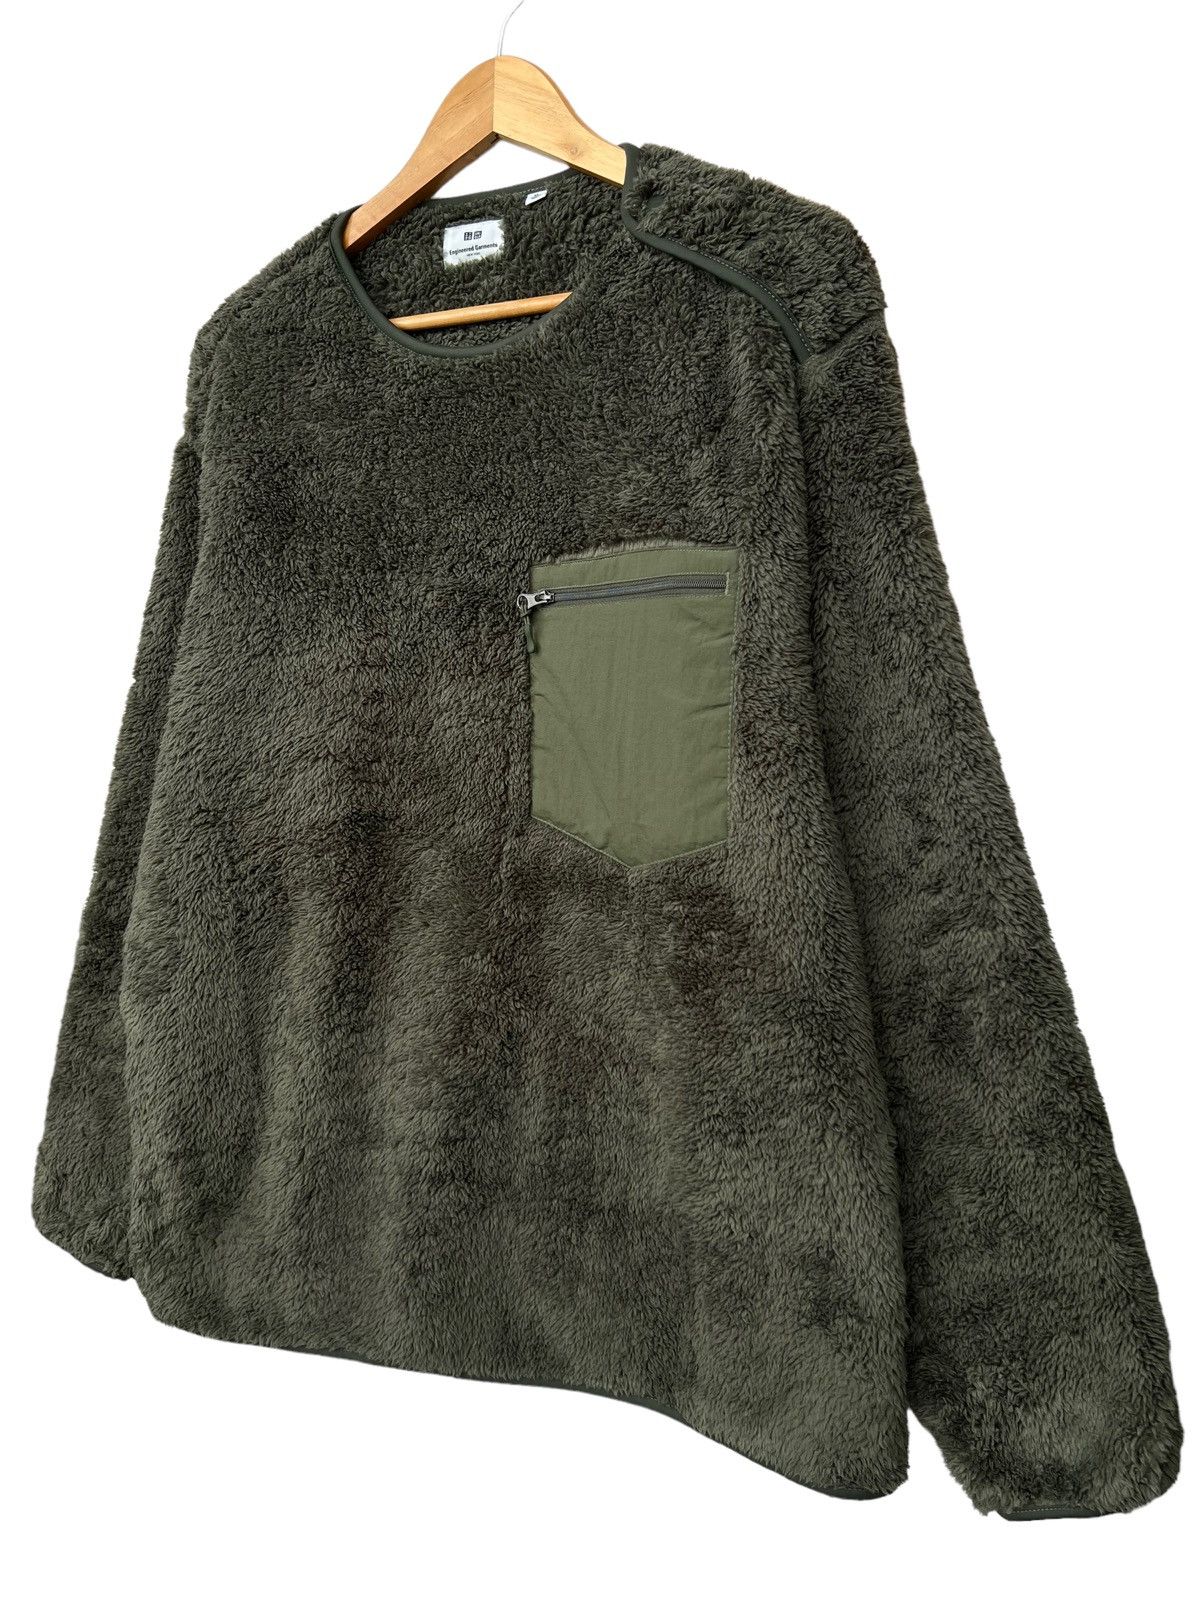 Engineered Garment Uniqlo Fleece Sweater - 6